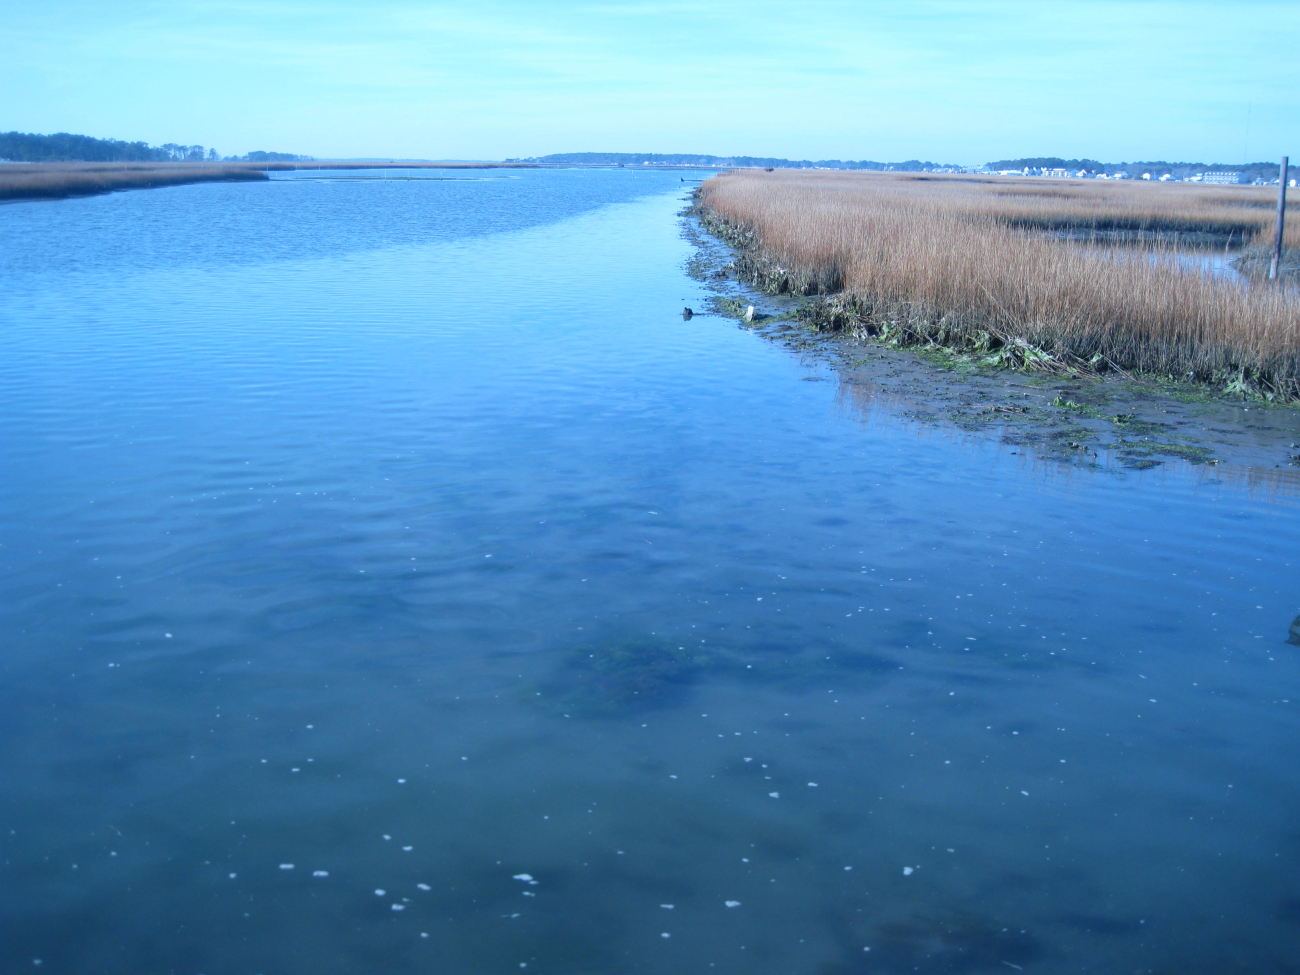 Chincoteague Bay wetlands at low tide